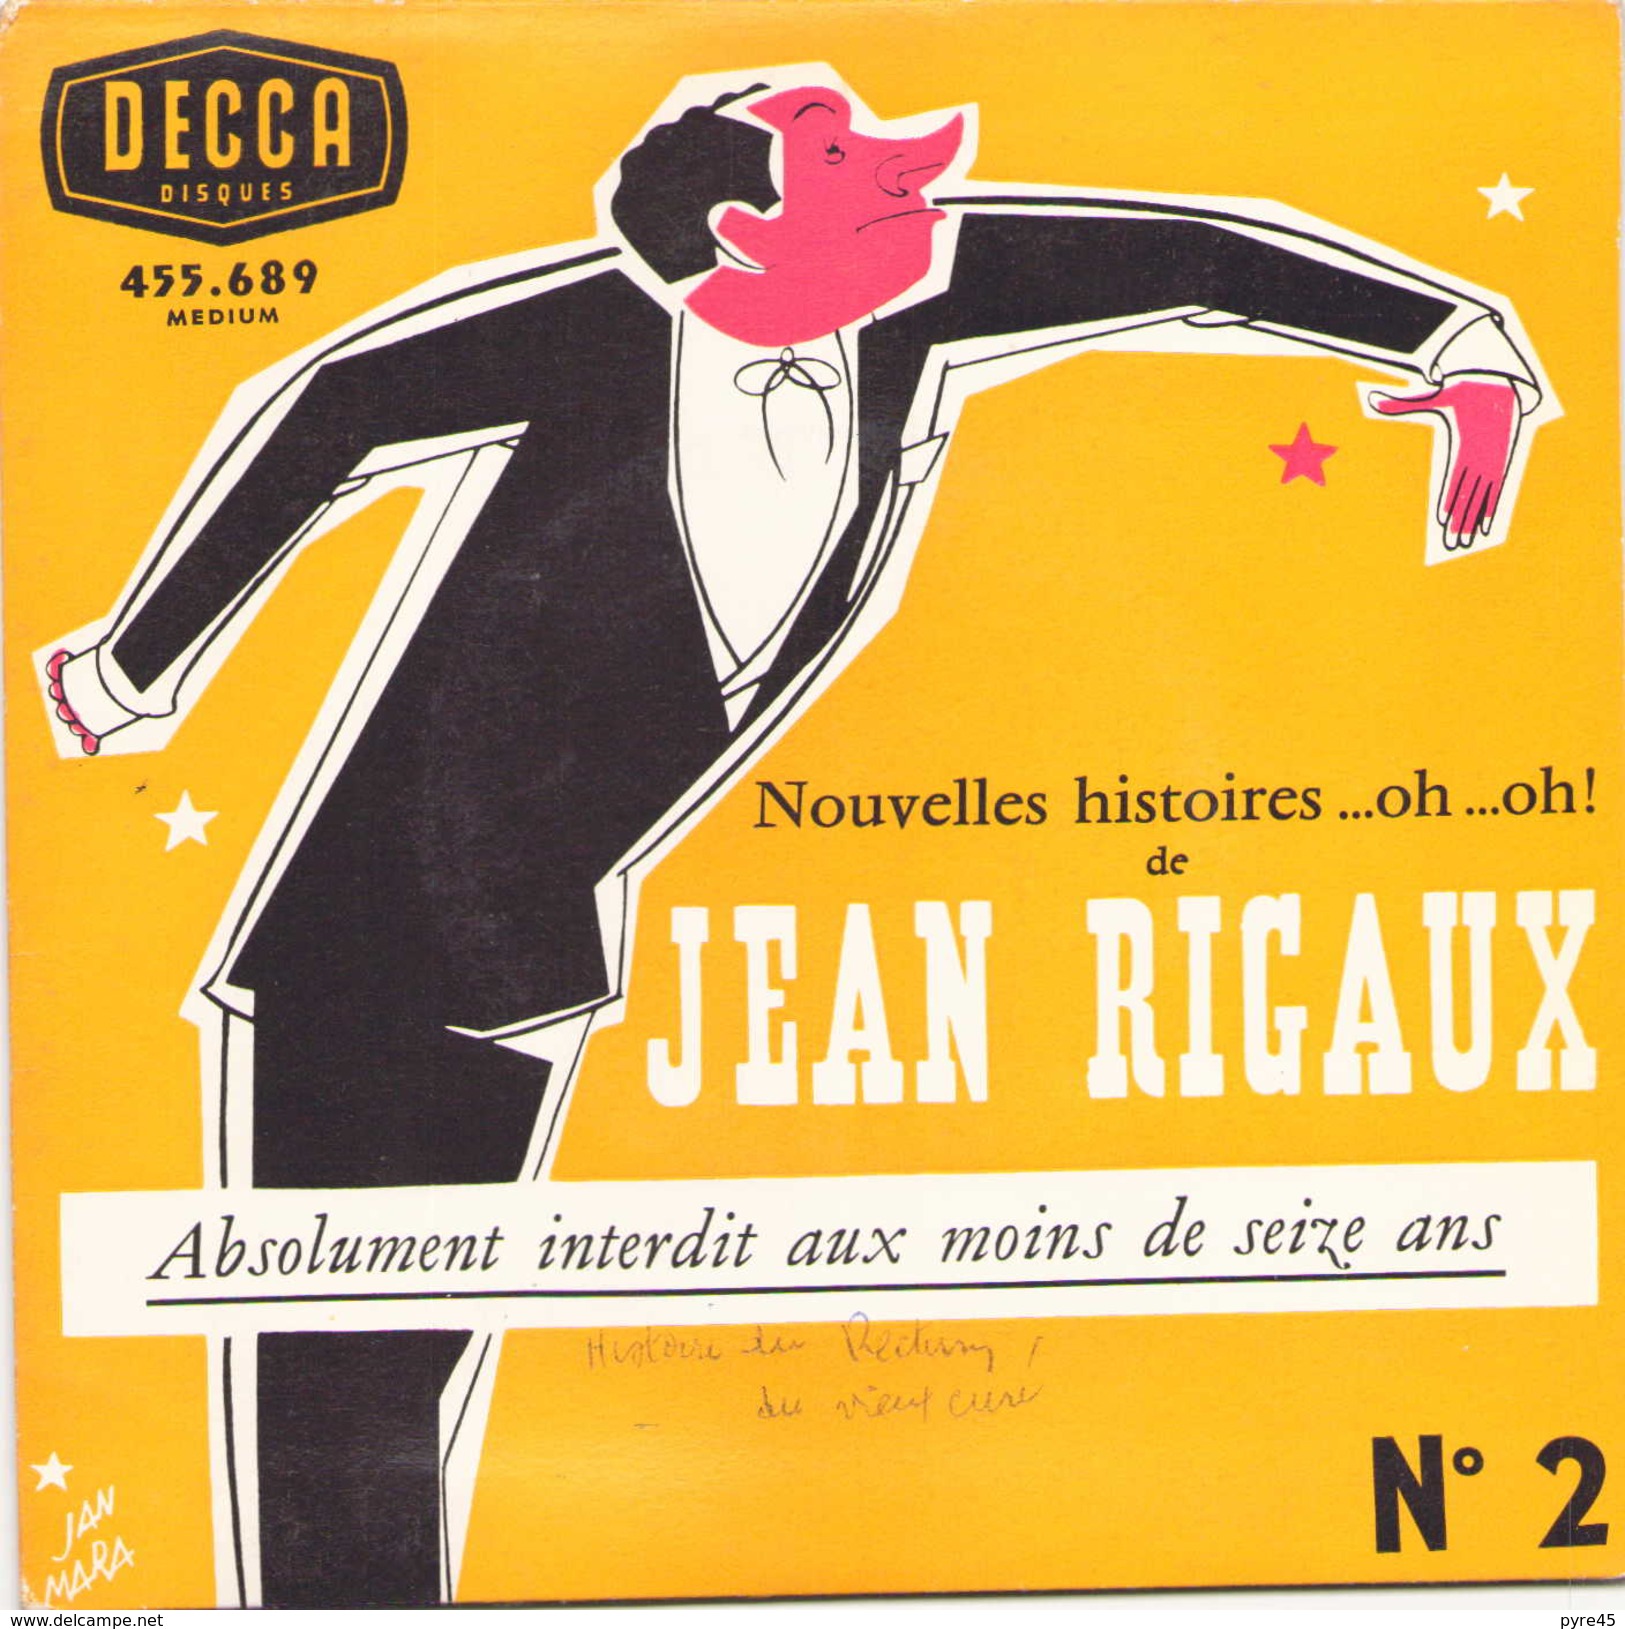 45 TOURS JEAN RIGAUX DECCA 455689 ABSOLUMENT INTERDIT AUX MOINS DE SEIZE ANS - Humour, Cabaret